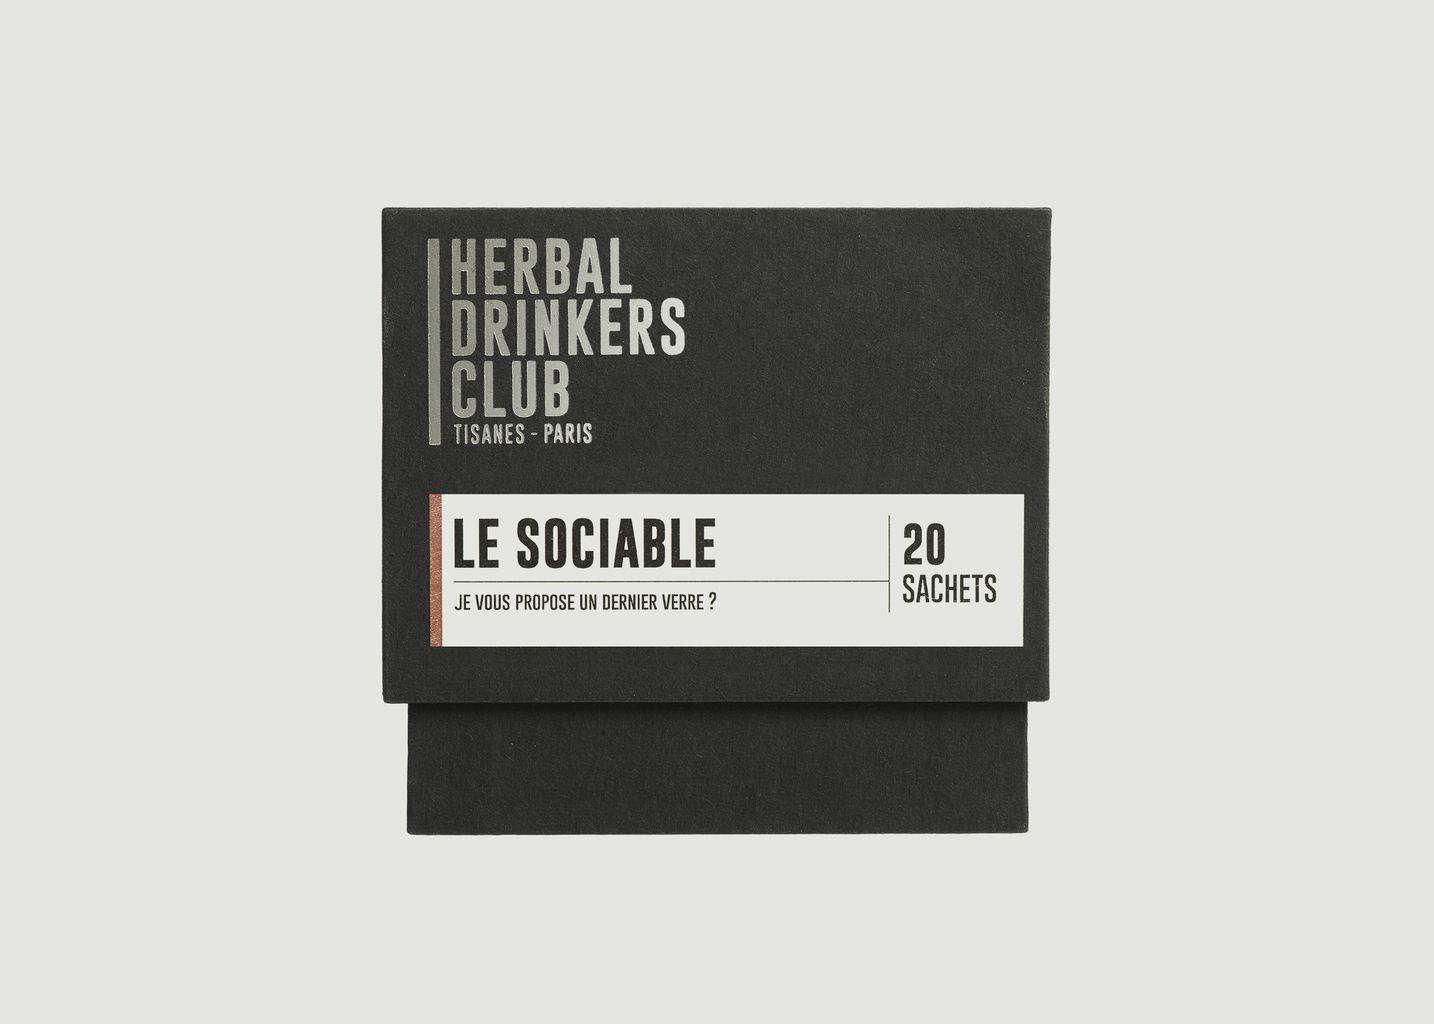 Le Sociable - Herbal Drinkers Club